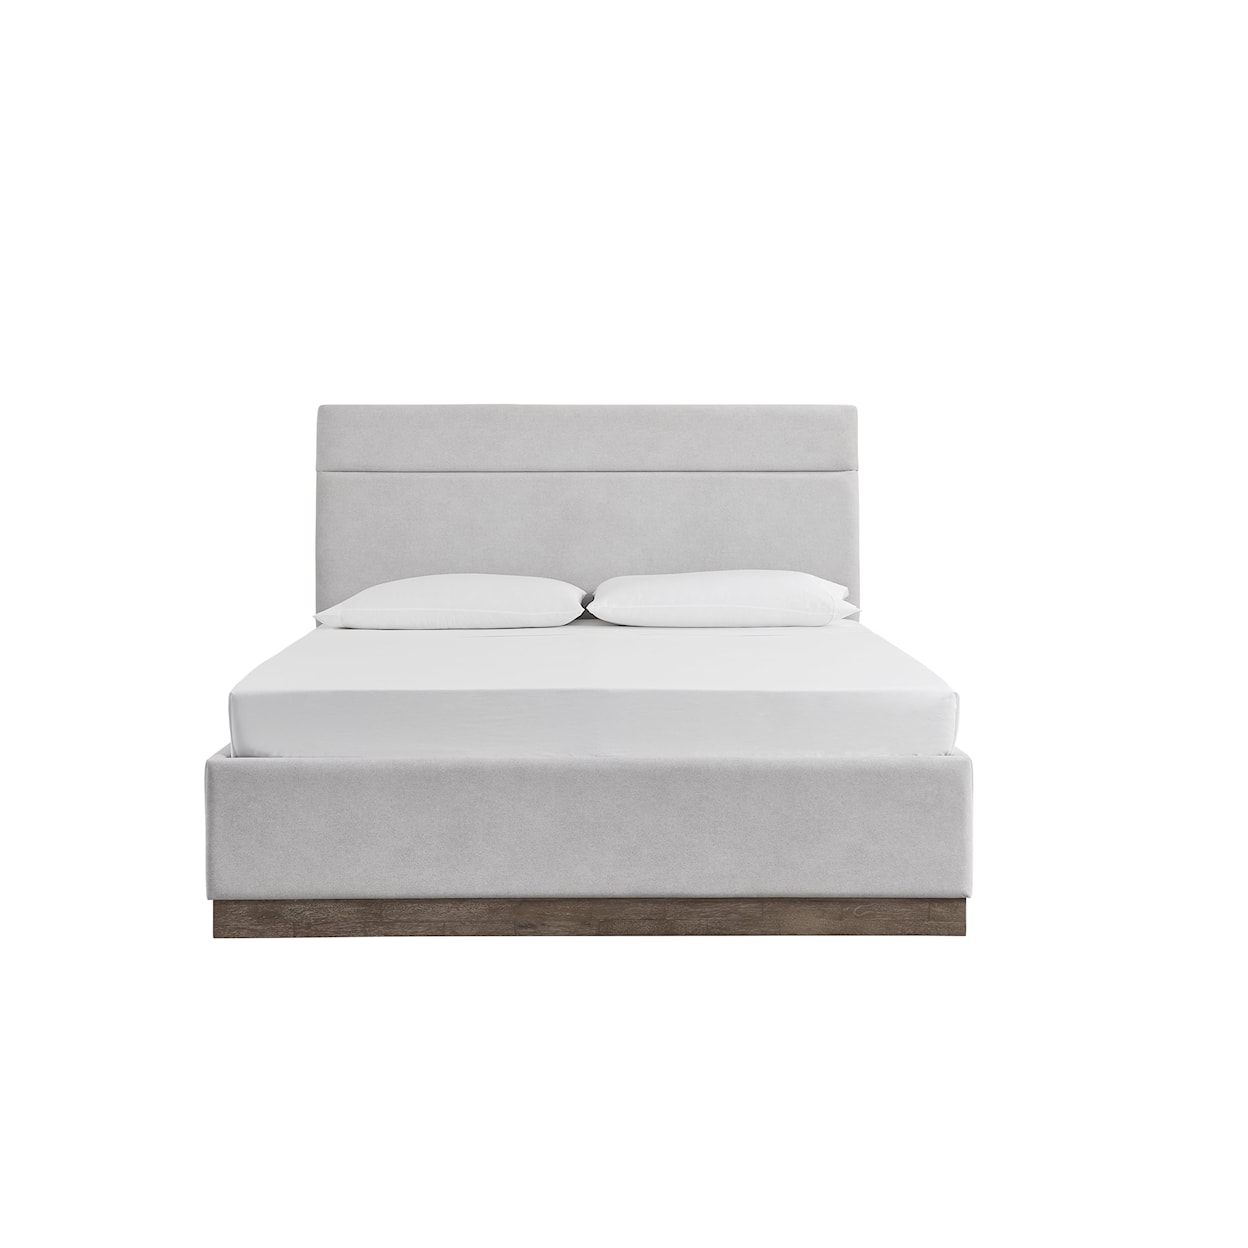 Magnussen Home Kavanaugh Bedroom Queen Upholstered Panel Bed